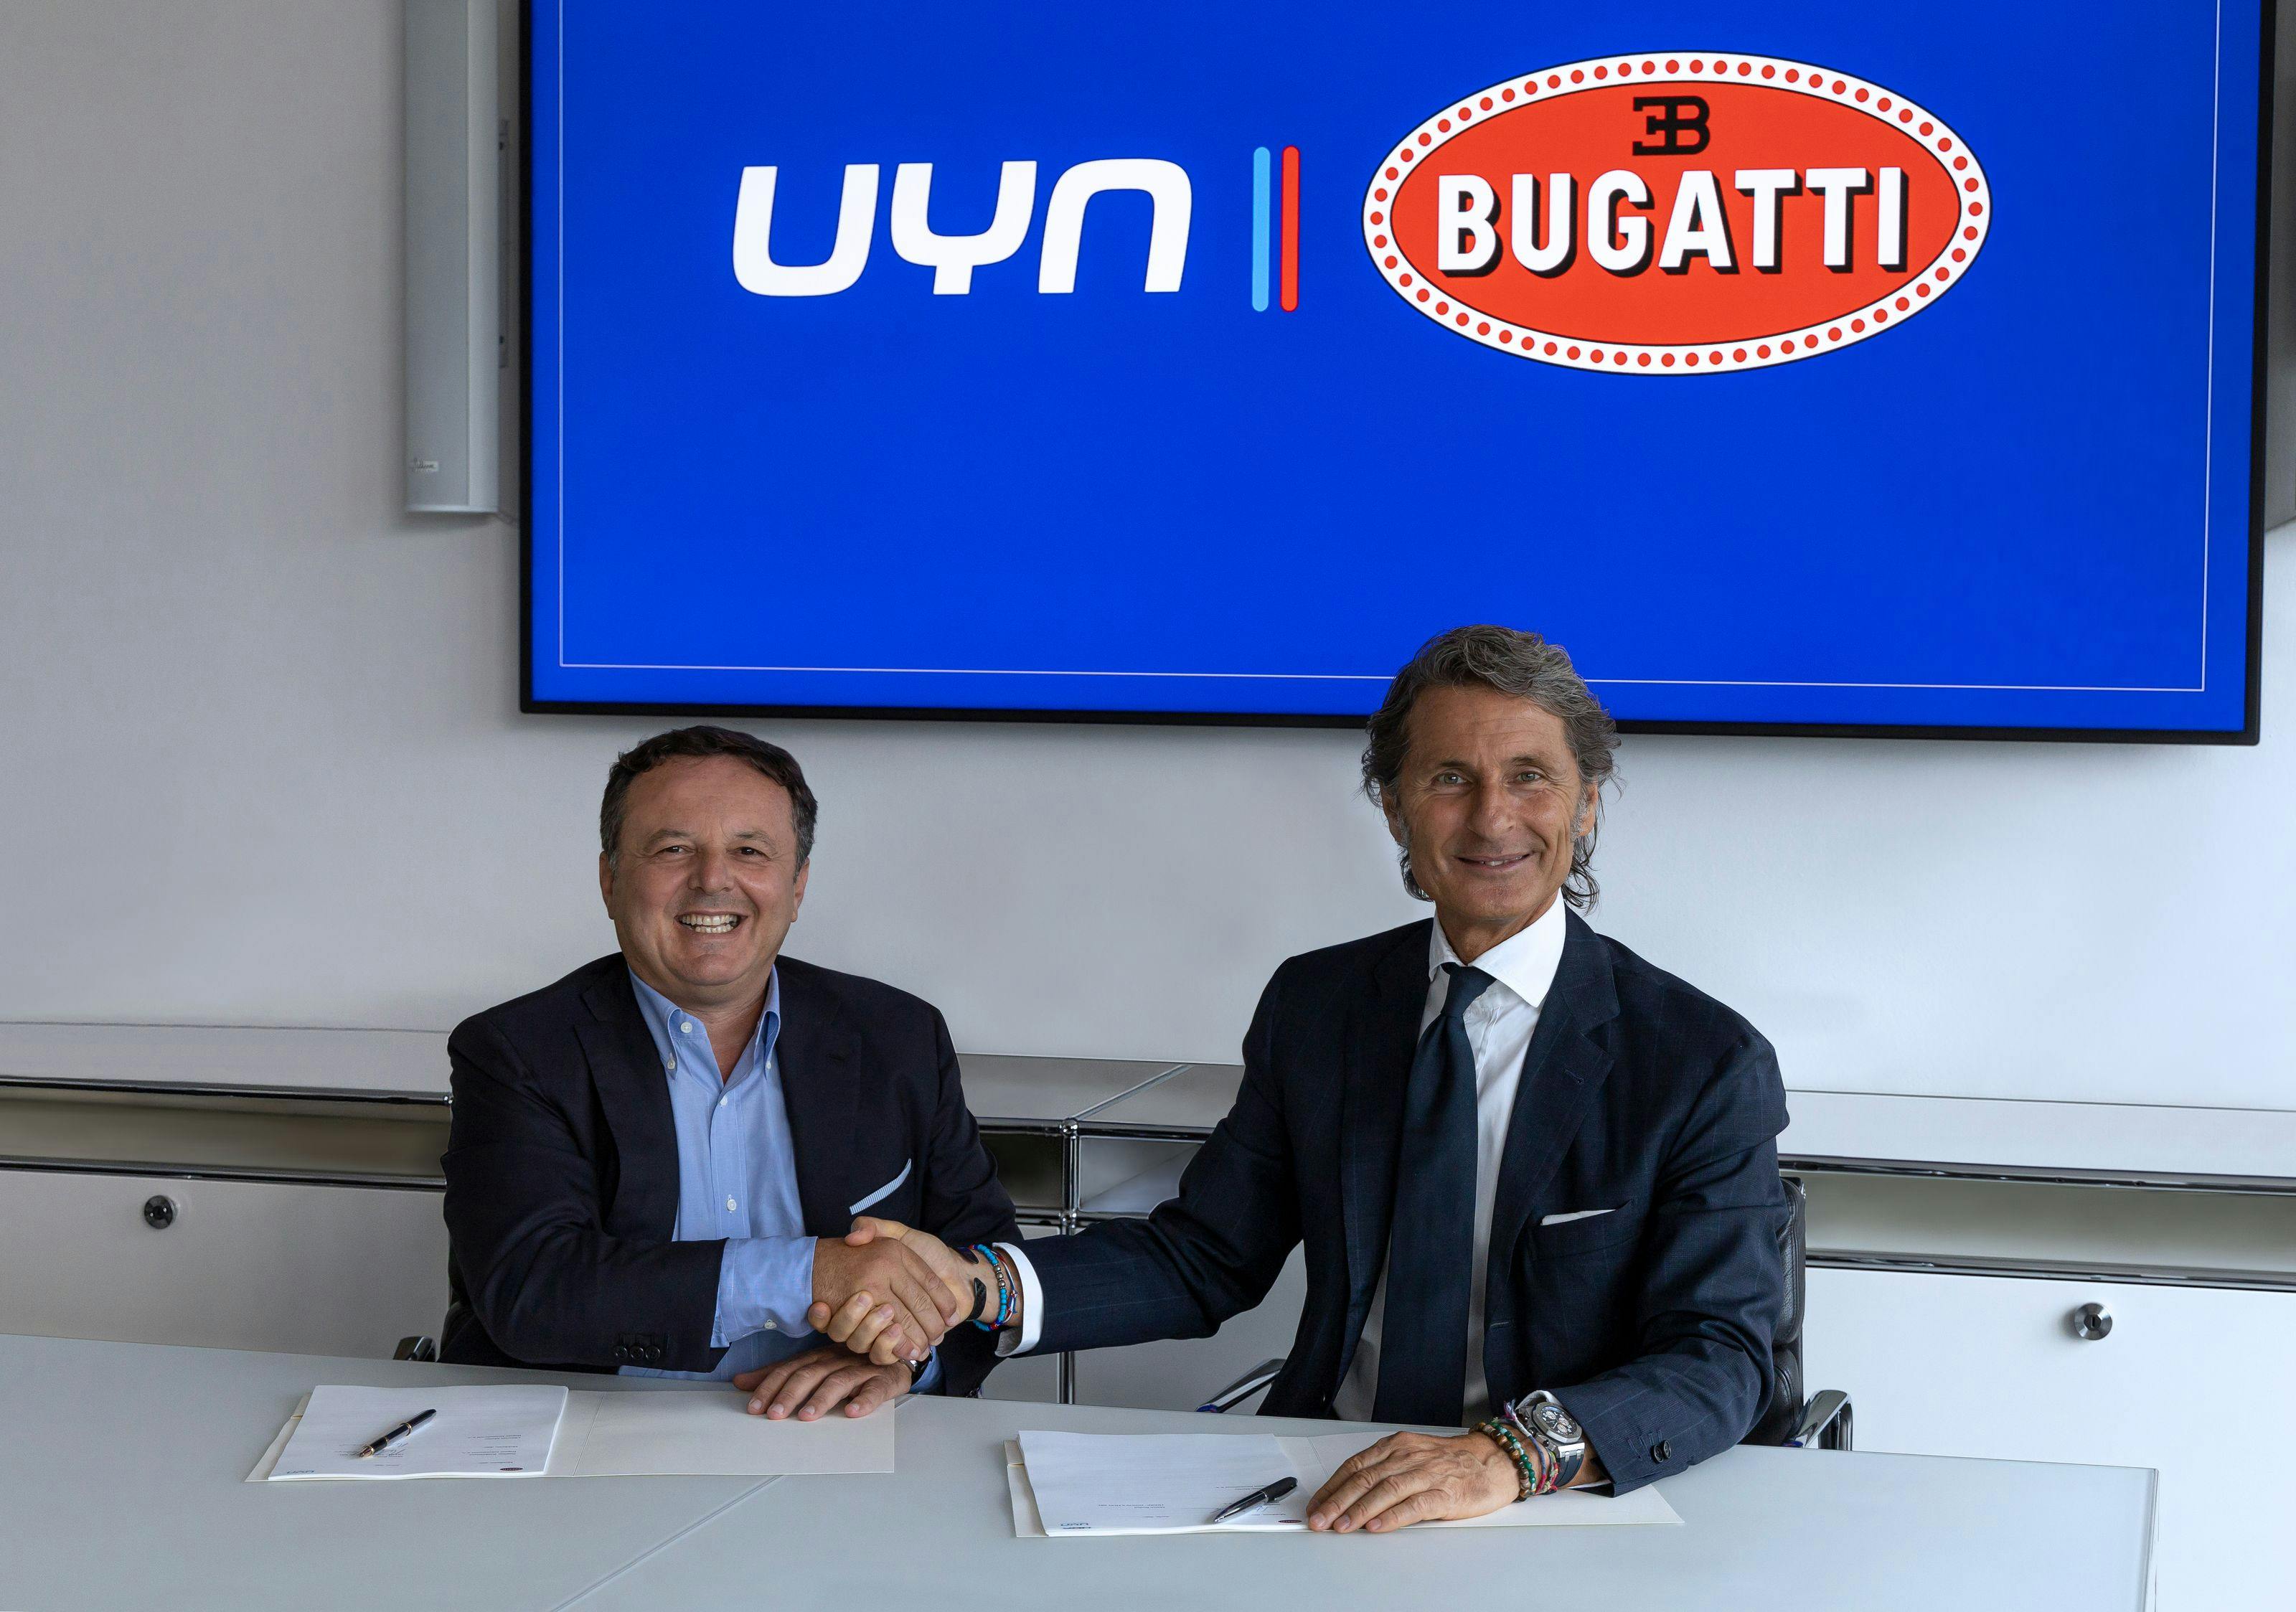 BUGATTI und UYN geben die Partnerschaft zur Herstellung einer exklusiven Kollektion aus hochtechnischer Funktionsbekleidung und -Schuhen bekannt